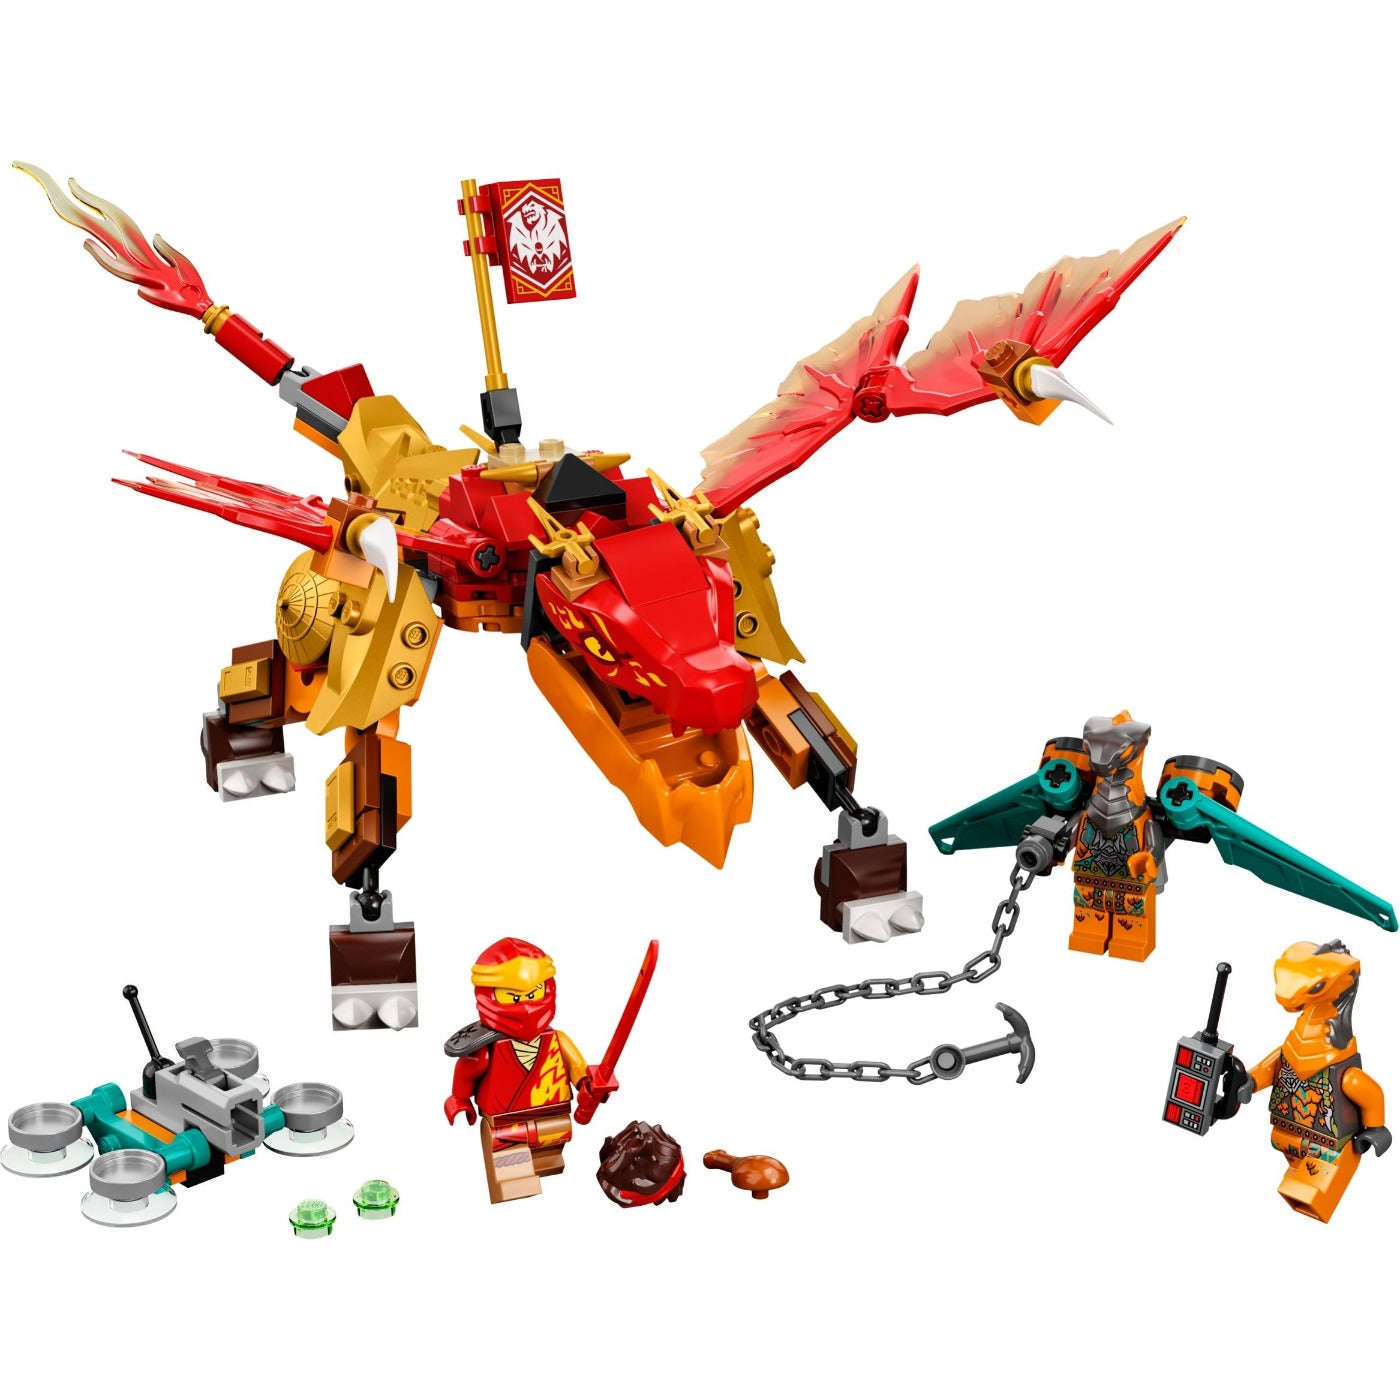 Lego 71762 Ninjago Kai?s Fire Dragon EVO